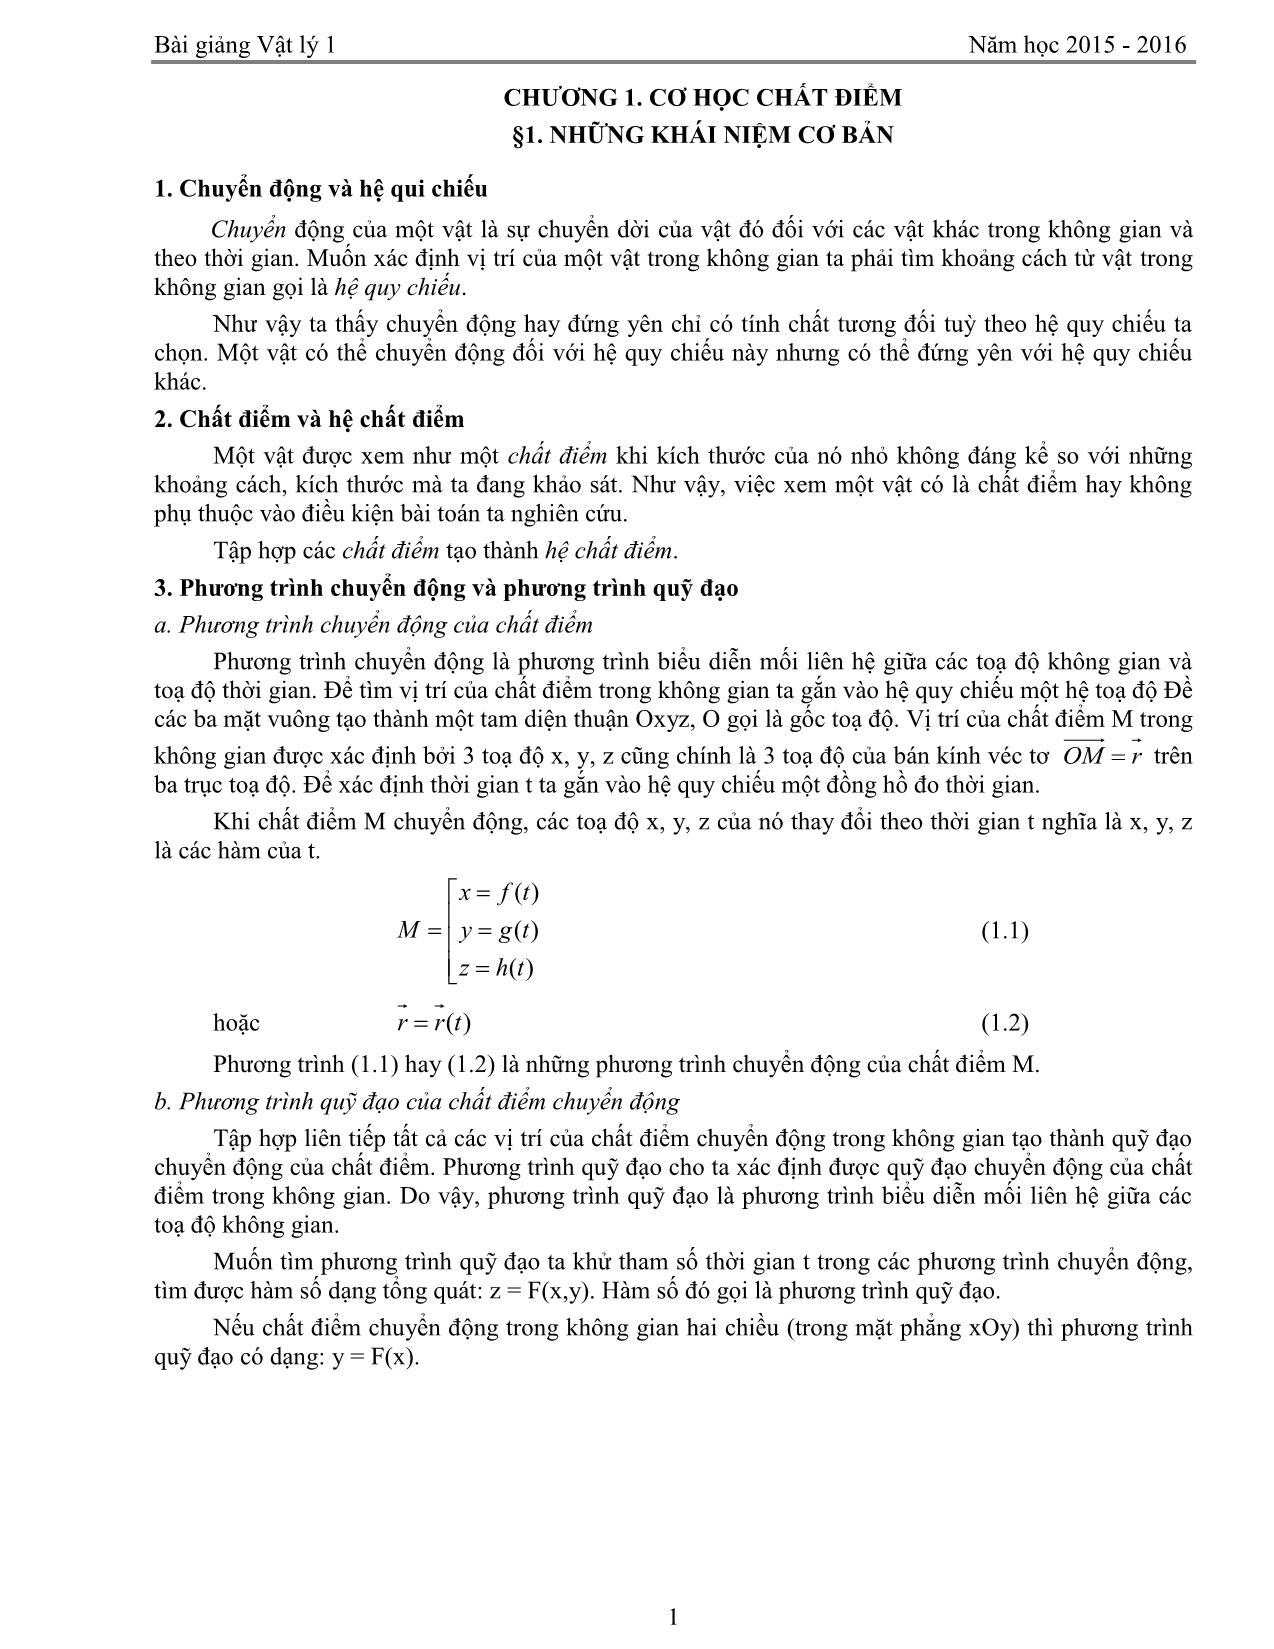 Giáo trình Vật lý 1 trang 1